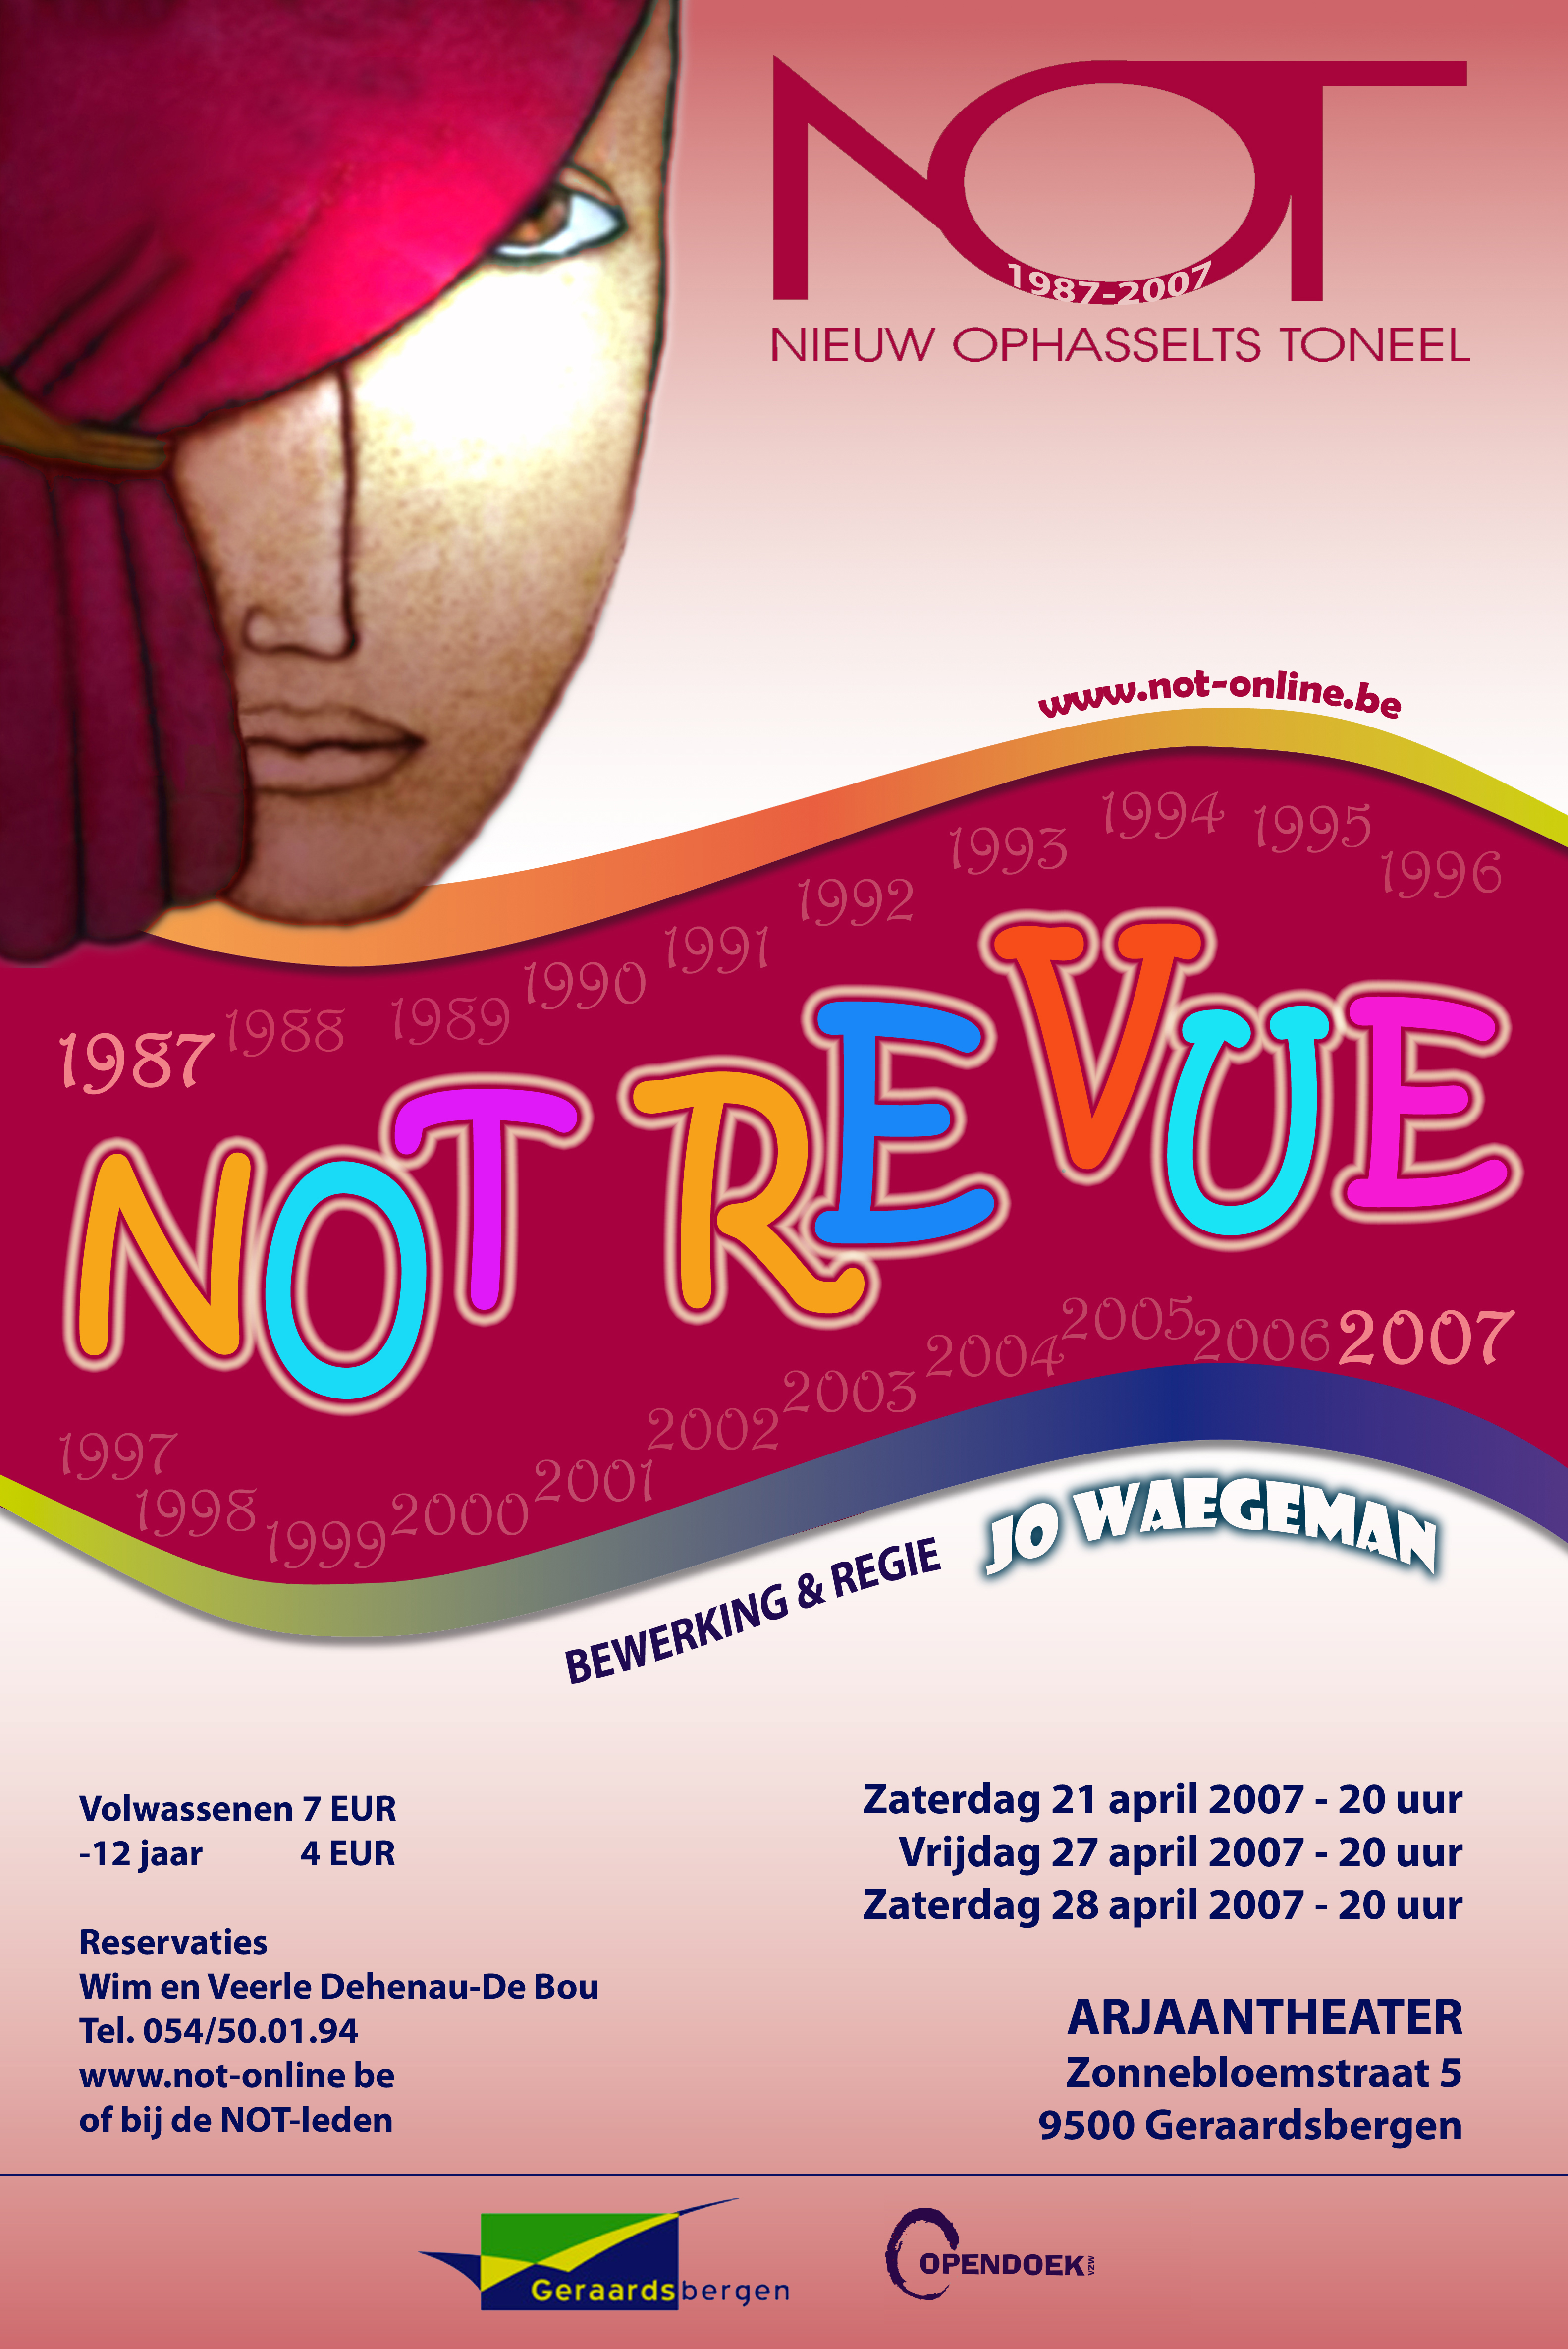 Nieuw Ophasselts Toneel - NOT-ReVue (2007)